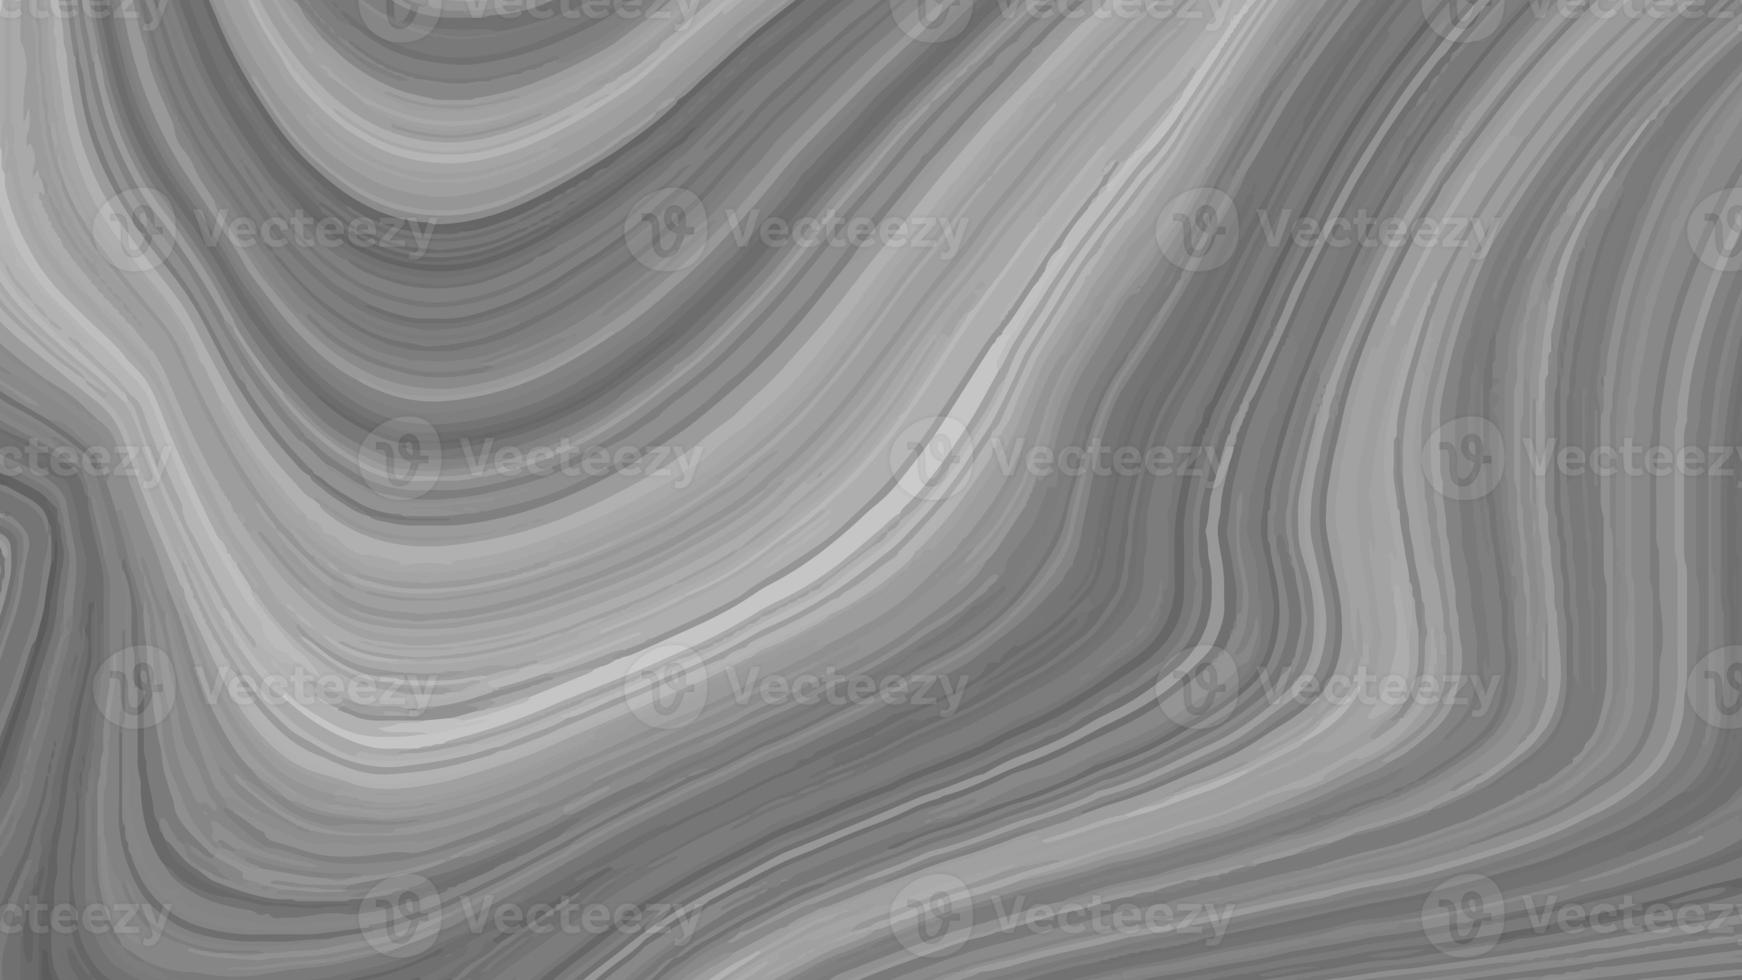 hermoso dibujo con los divorcios y lineas onduladas en tonos grises. textura líquida plateada. superficie metálica plateada. textura abstracta de mármol plateado. fondo de mármol gris negro abstracto. licuar de lujo foto